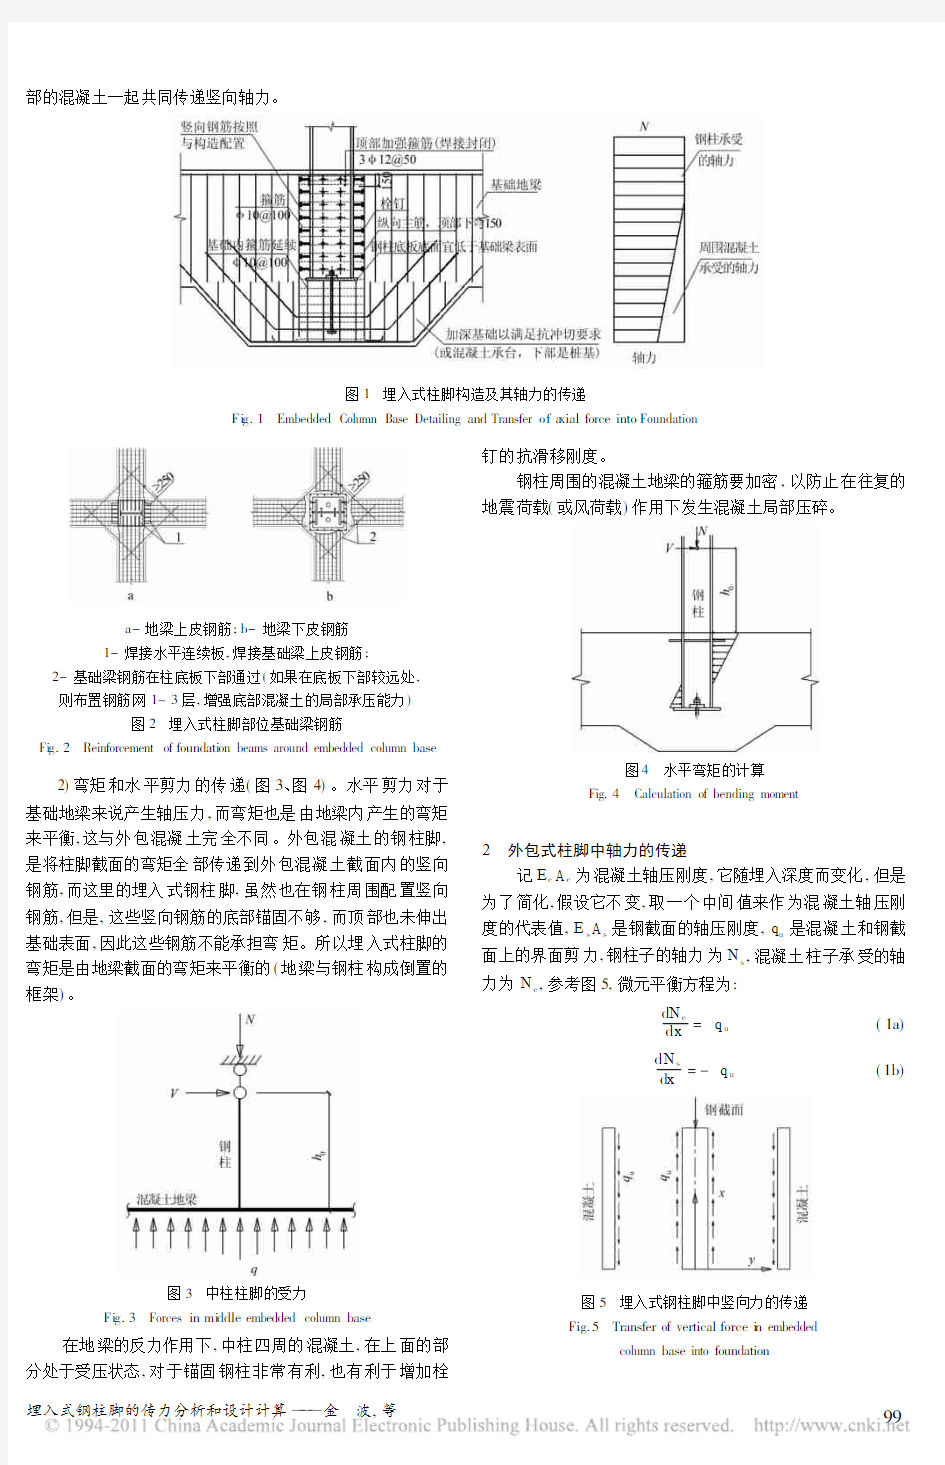 埋入式钢柱脚的传力分析和设计计算